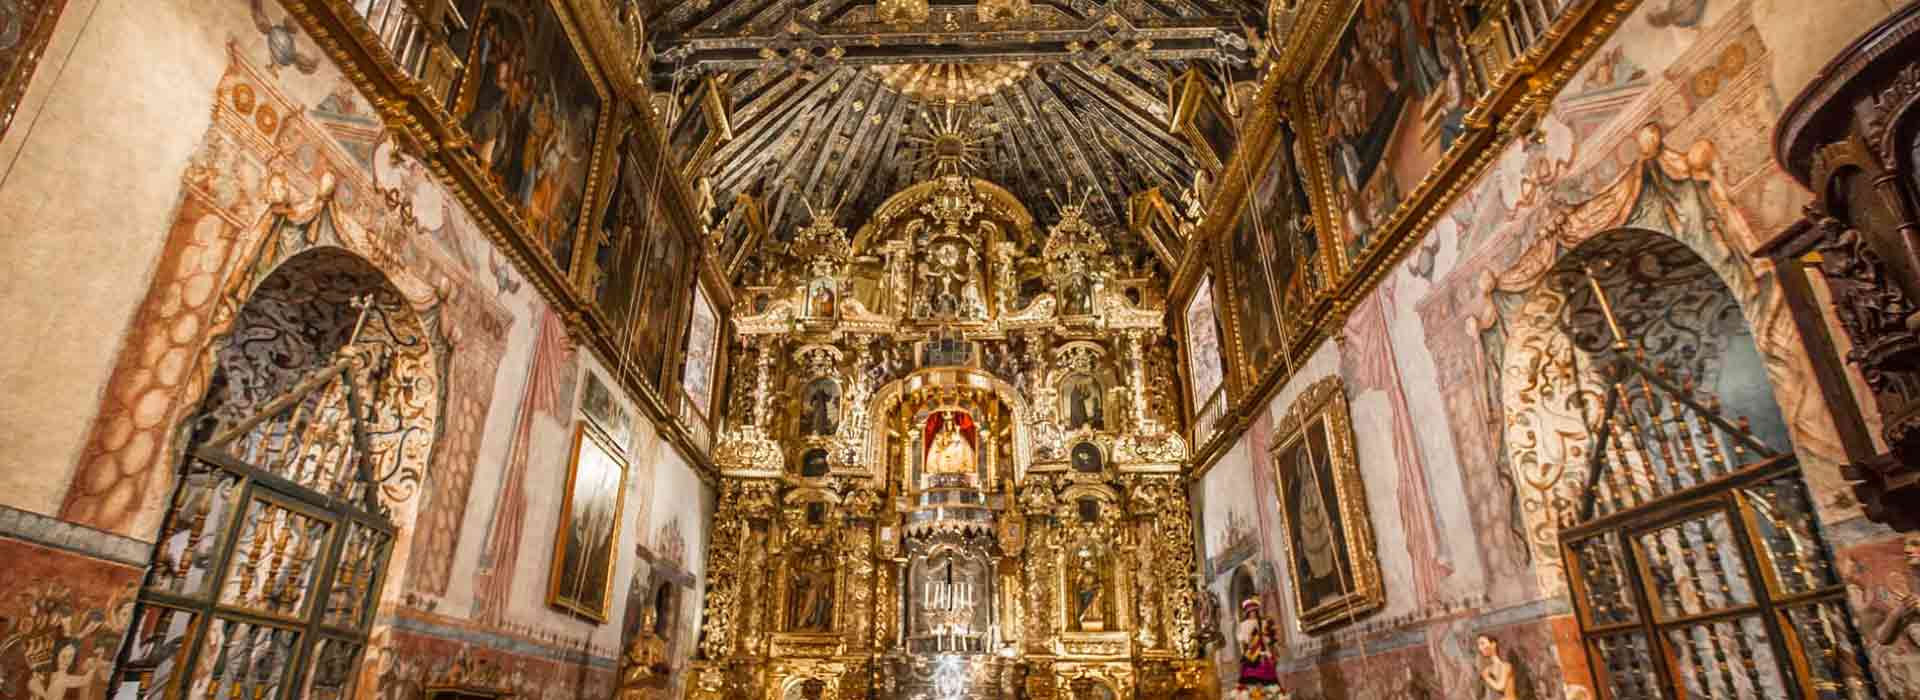 sur de cusco tipon piquillaqta y capilla sixtina de andahuaylillas gallery 0